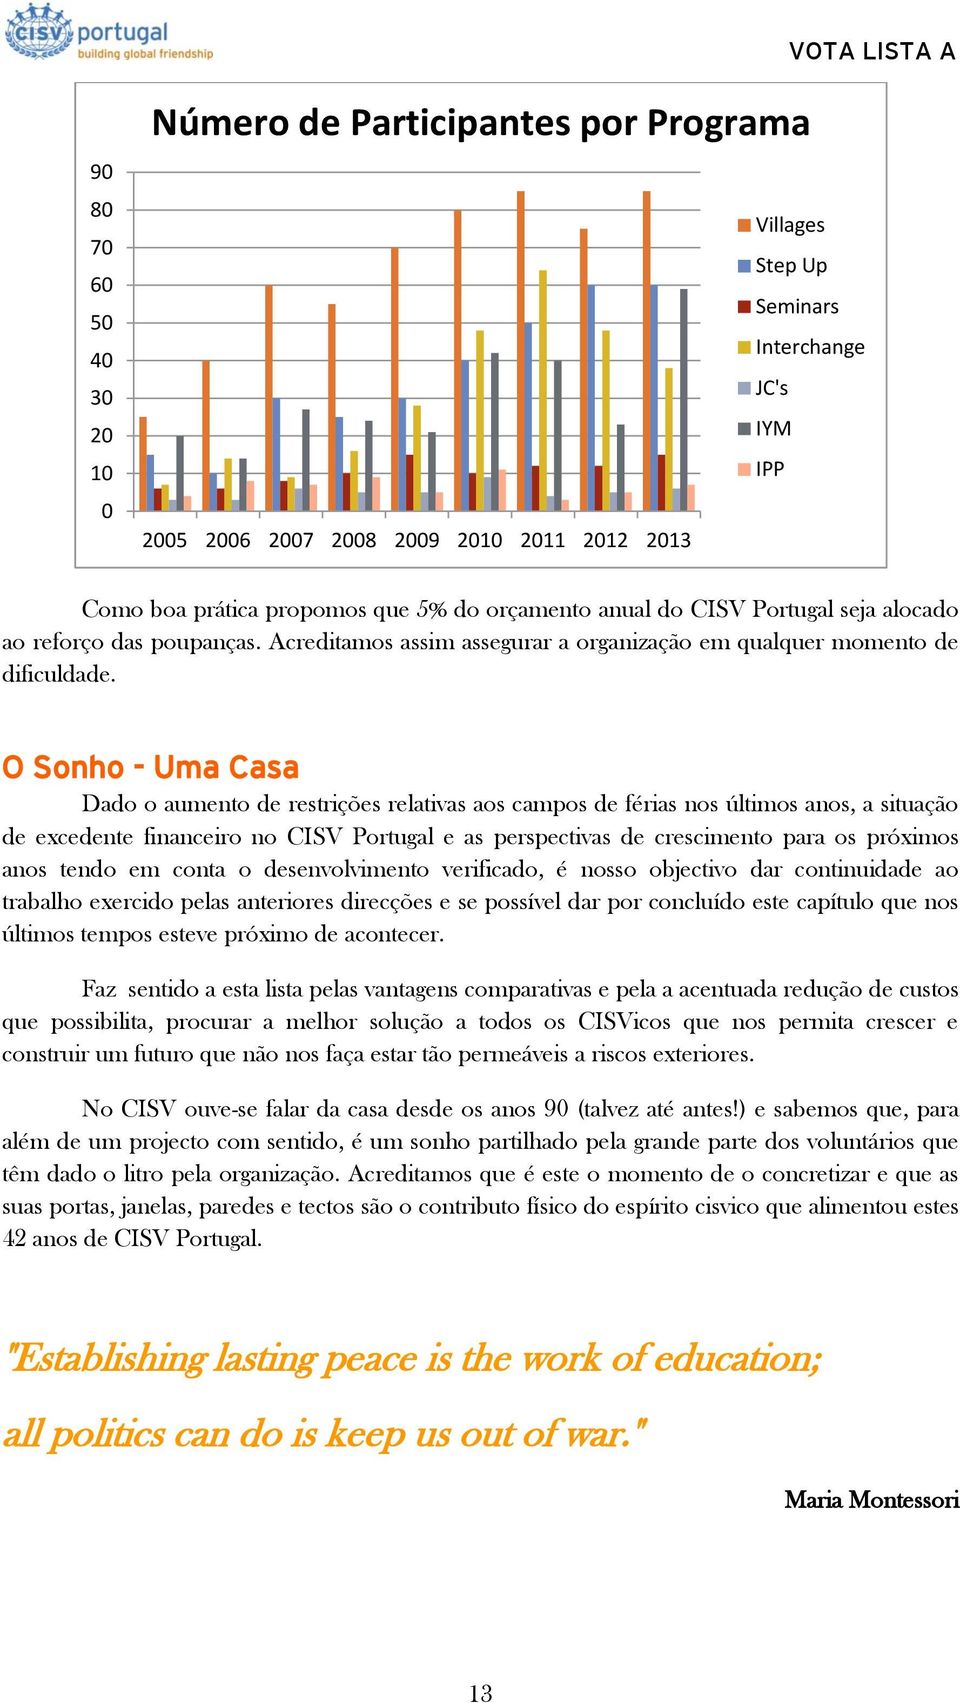 O Sonho - Uma Casa Dado o aumento de restrições relativas aos campos de férias nos últimos anos, a situação de excedente financeiro no CISV Portugal e as perspectivas de crescimento para os próximos